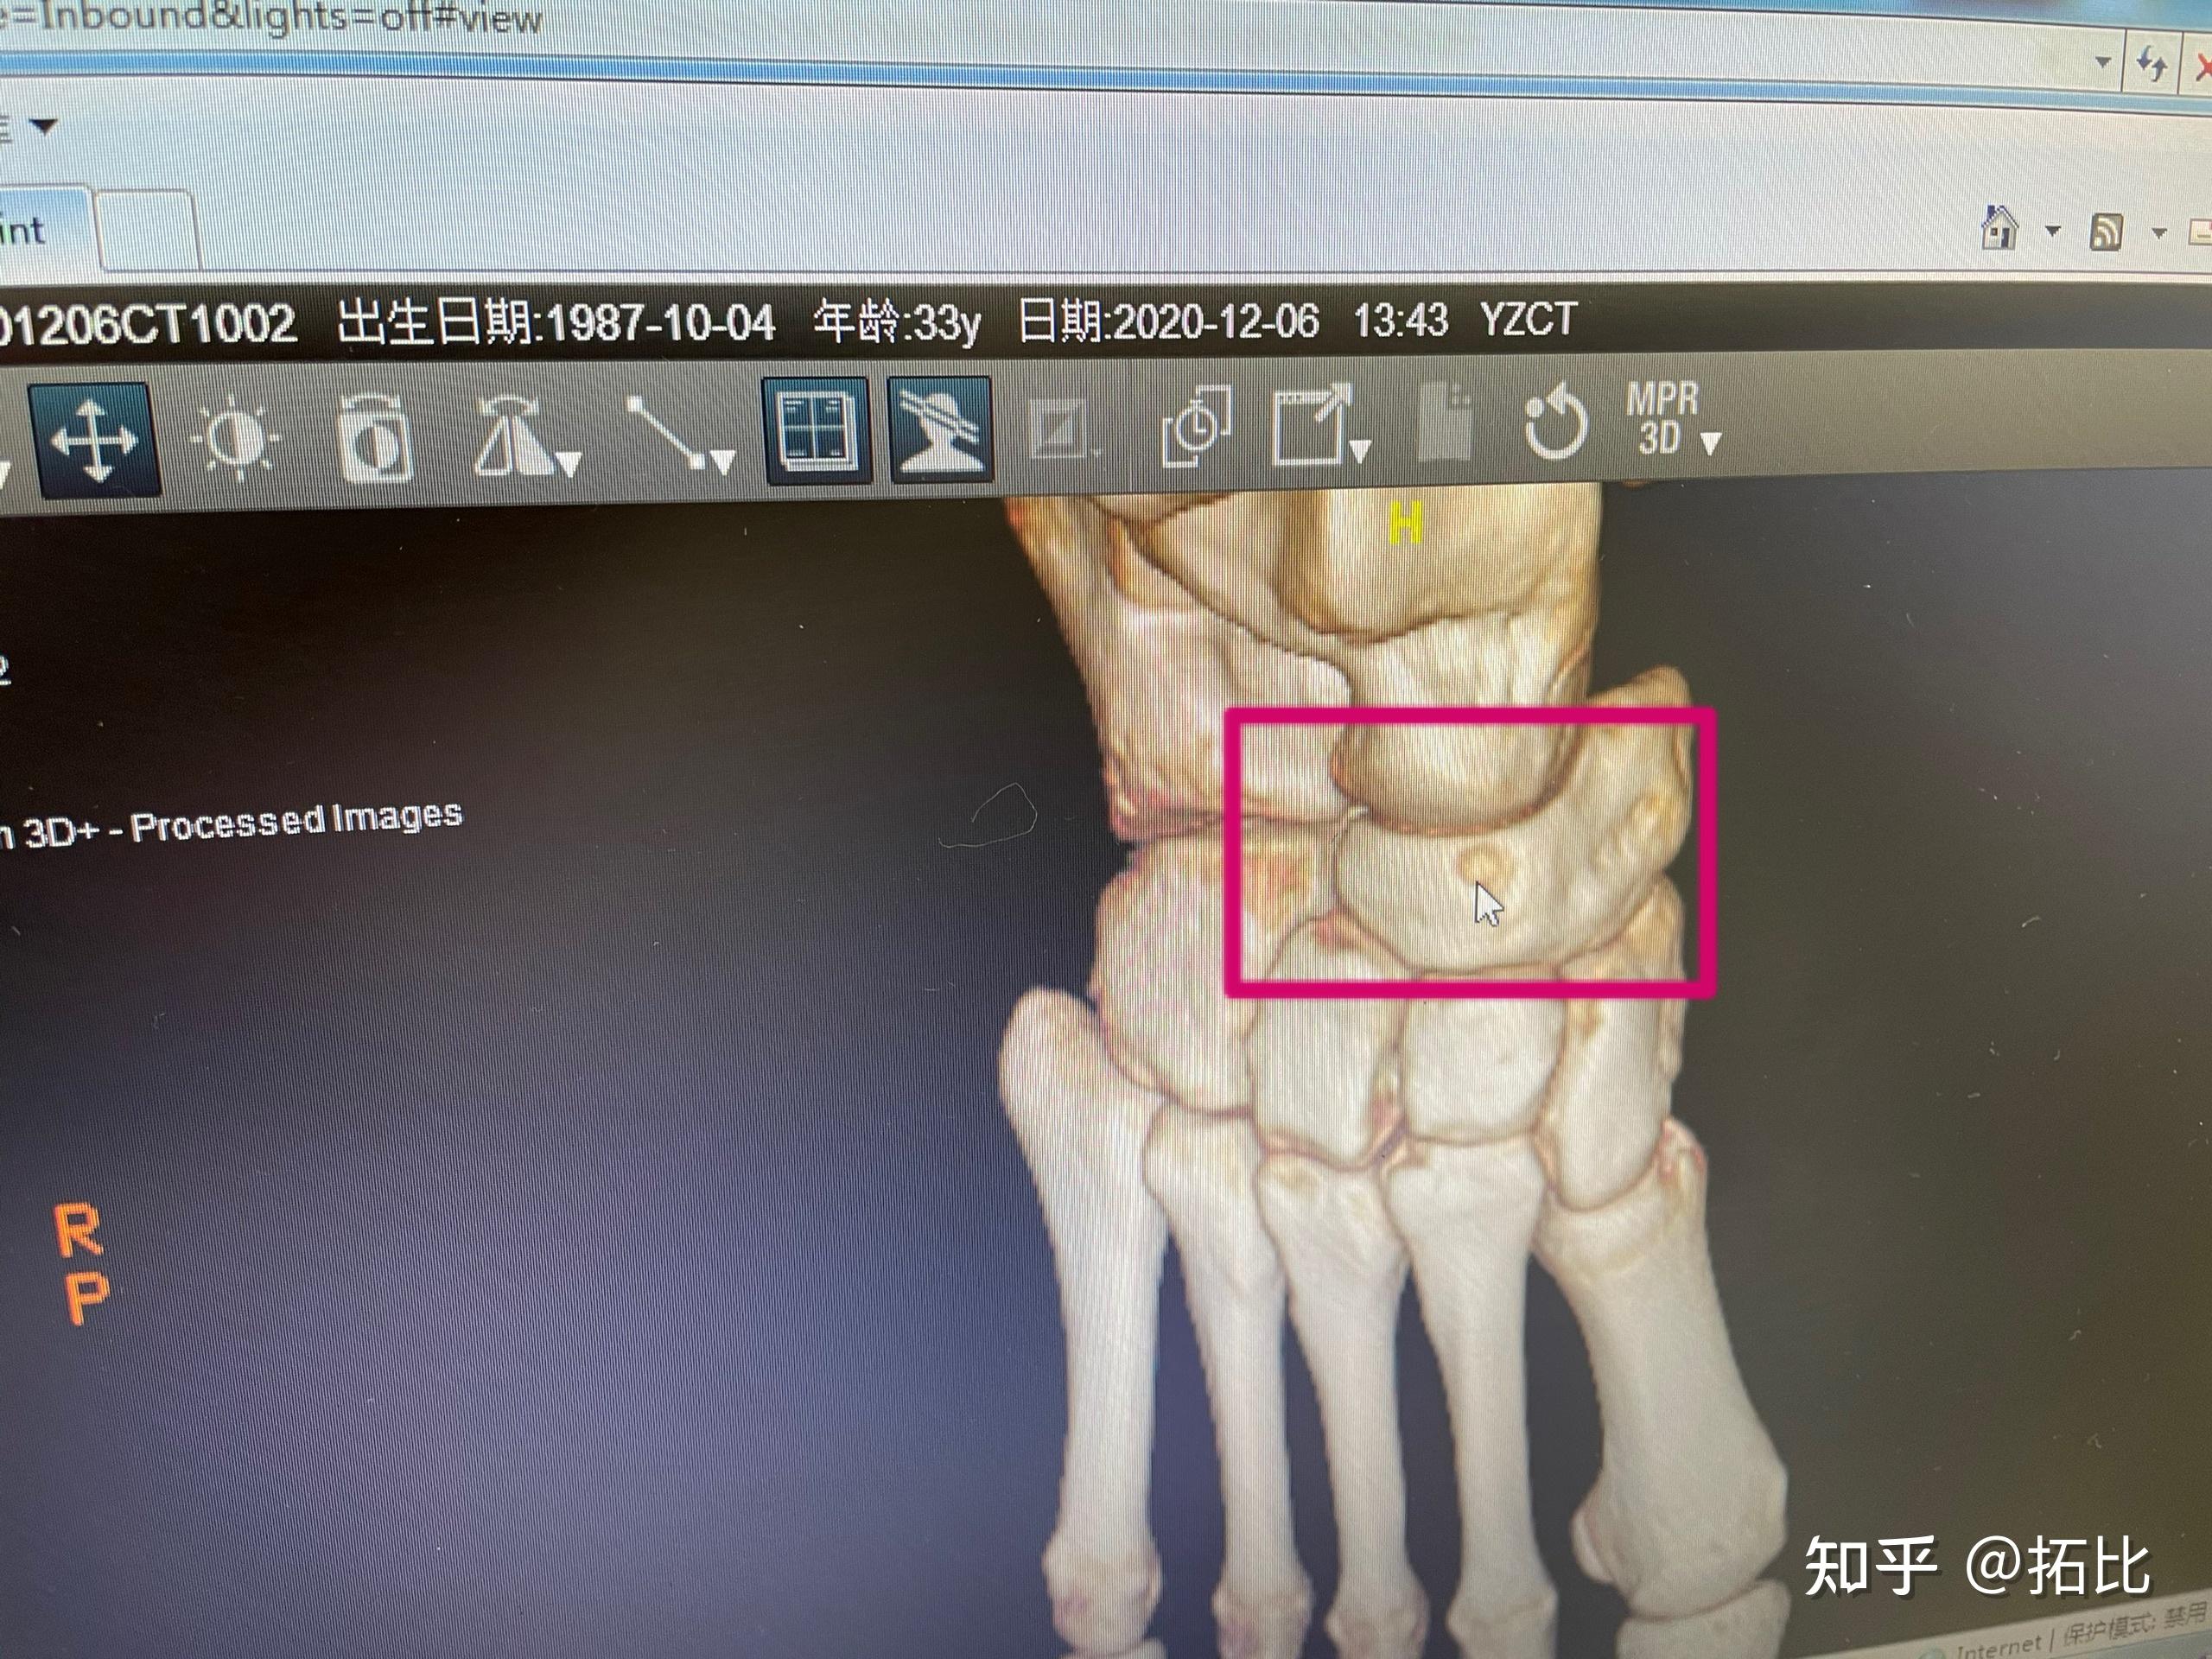 报告居然说我是右脚足舟骨前背面和足根骨前外缘撕脱性骨折,有小片